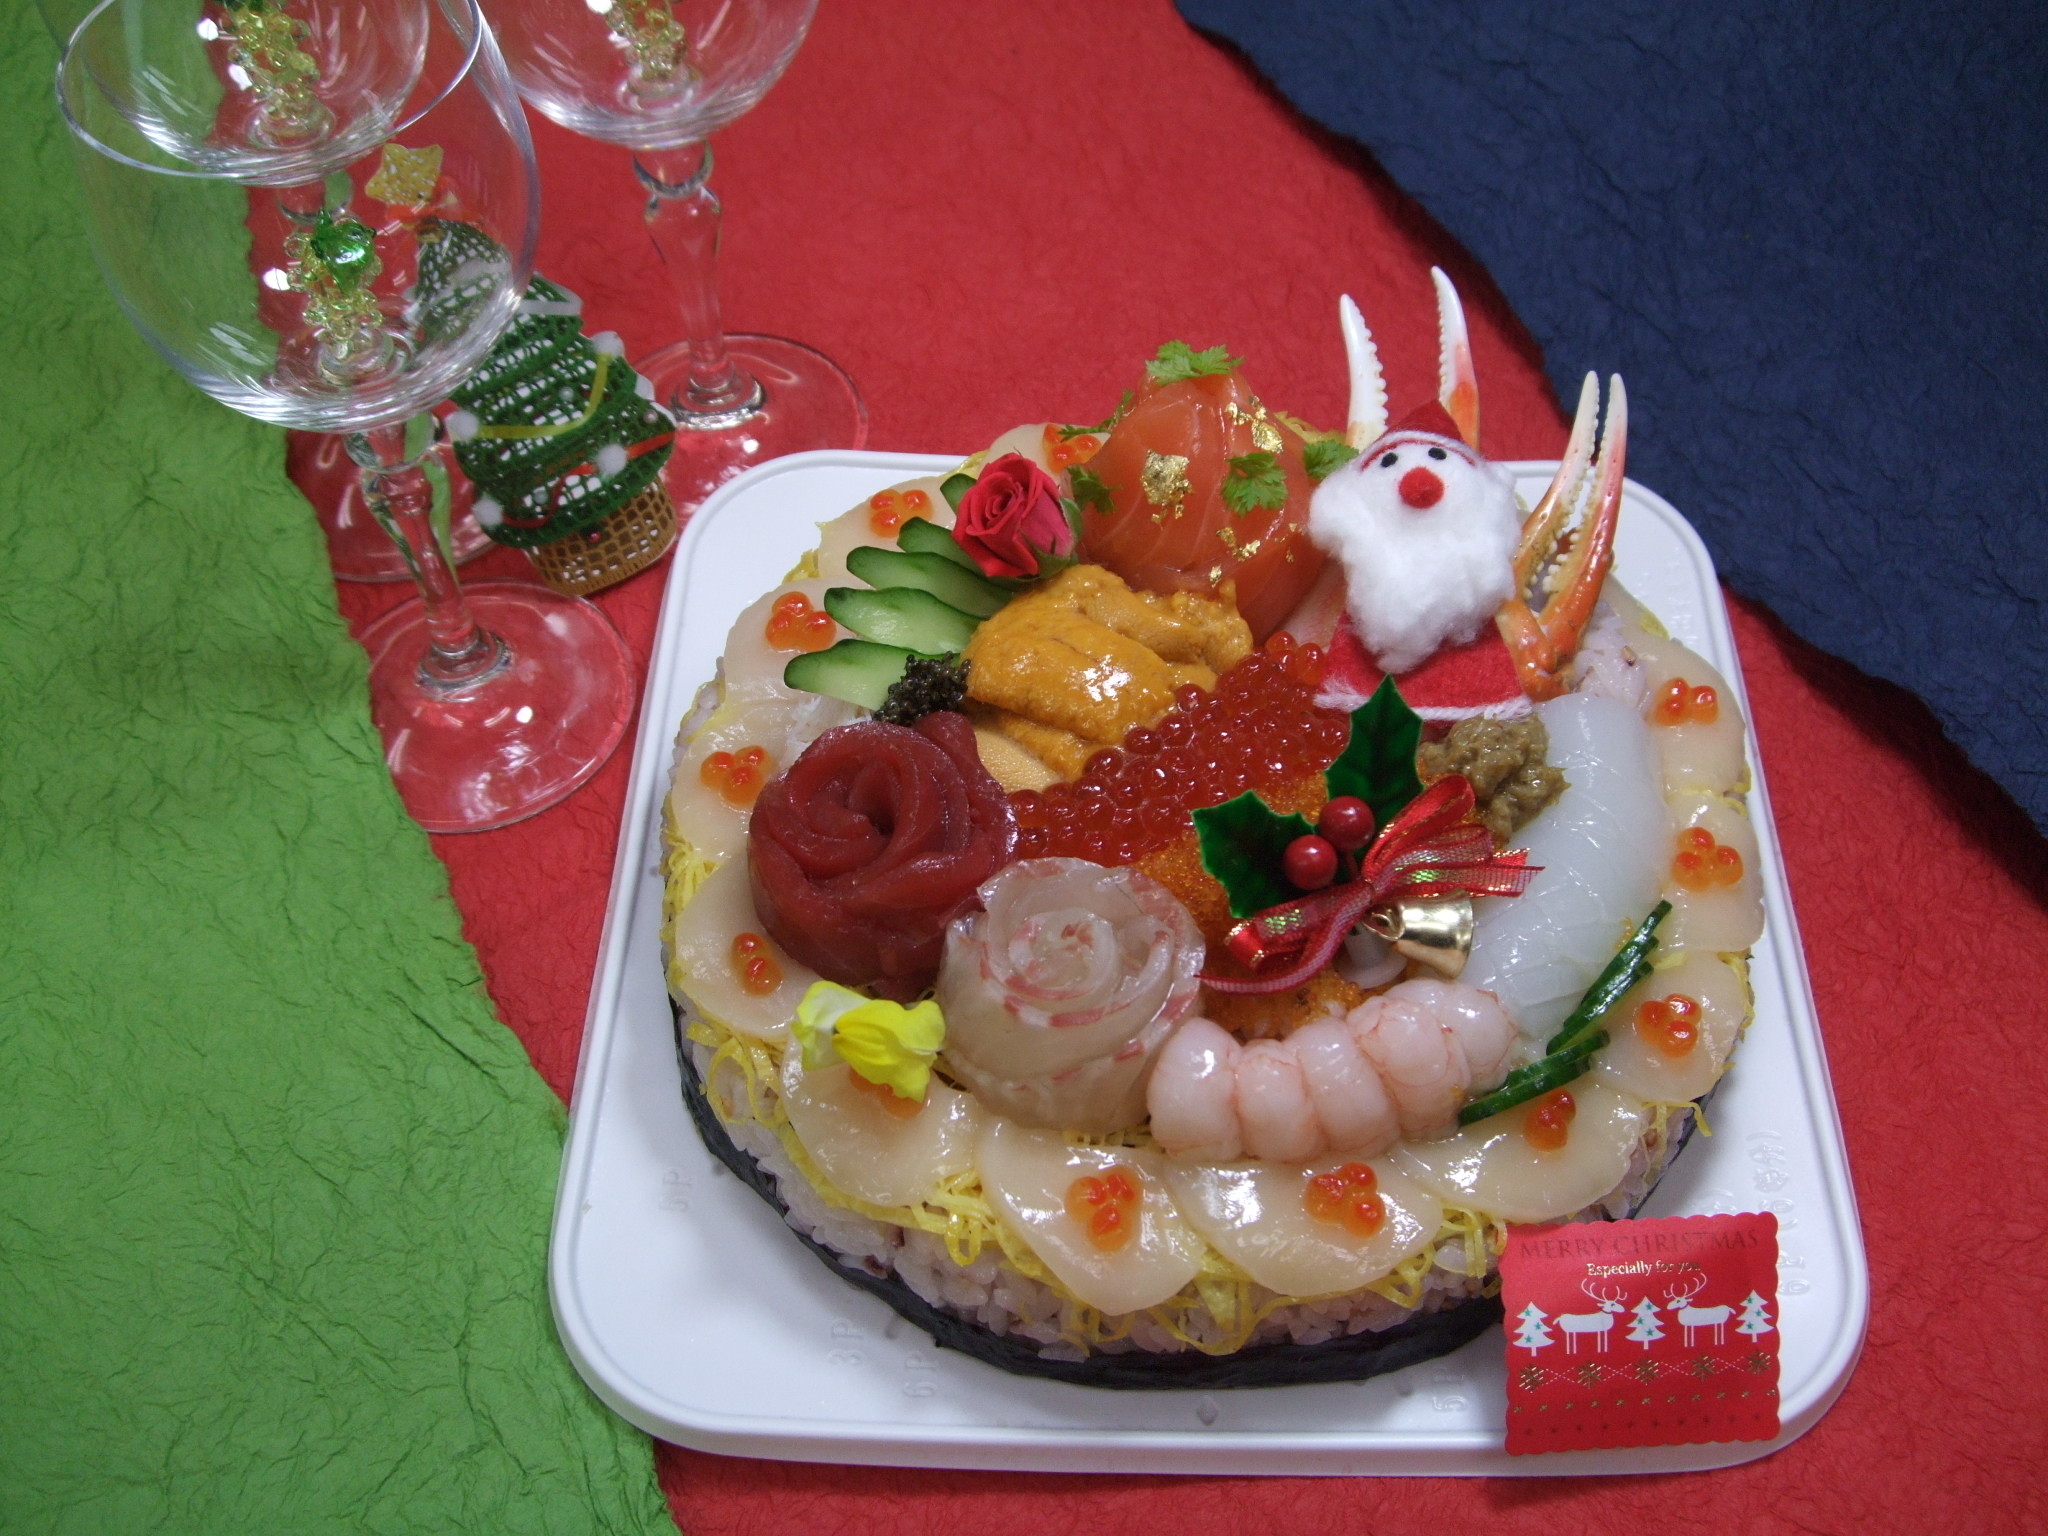 毎年好評の クリスマス寿司デコケーキ の予約受付を開始 有限会社プラグレス ヒロのプレスリリース